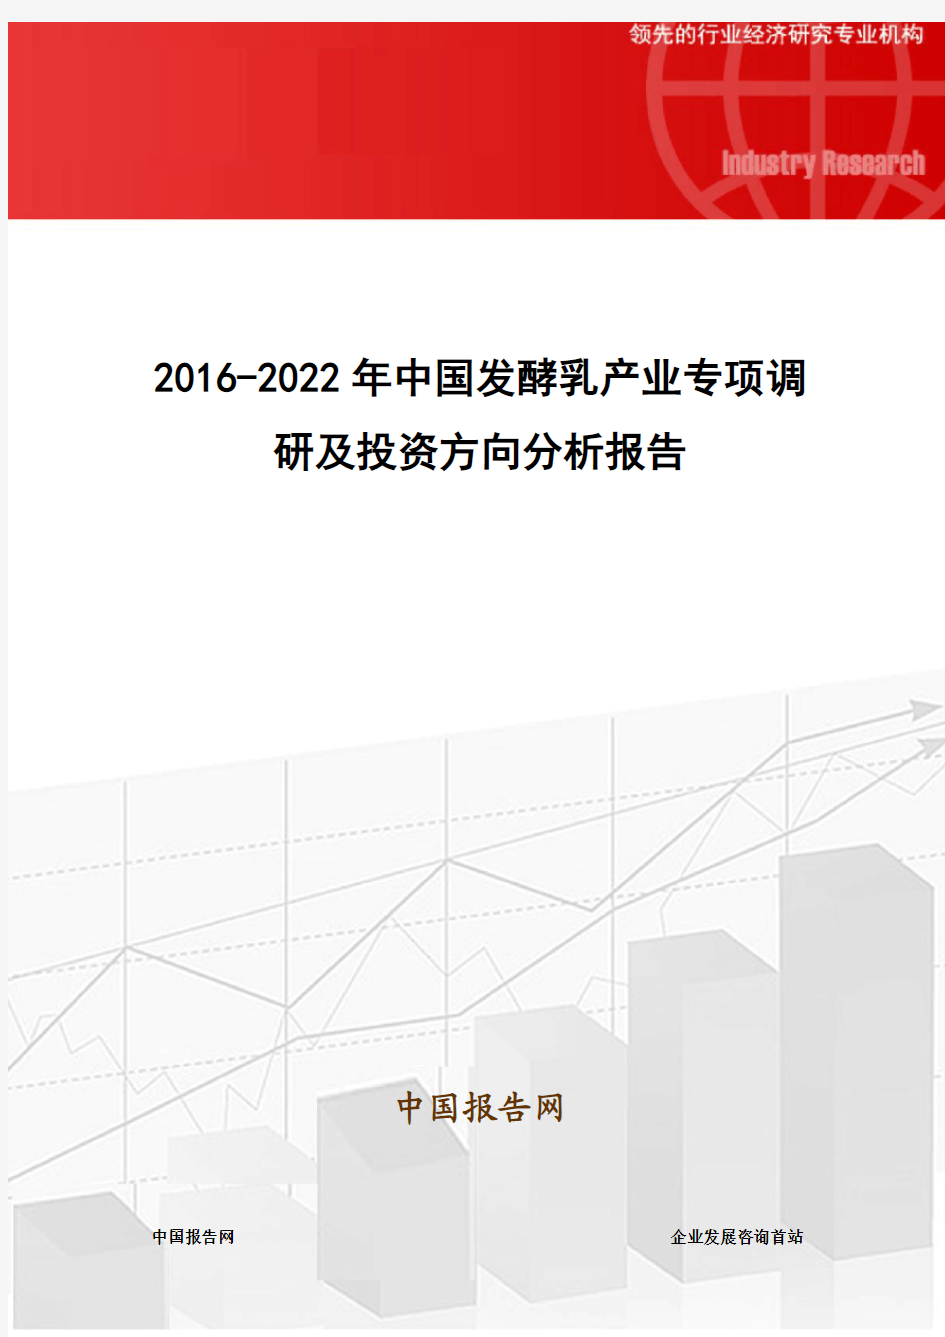 2016-2022年中国发酵乳产业专项调研及投资方向分析报告